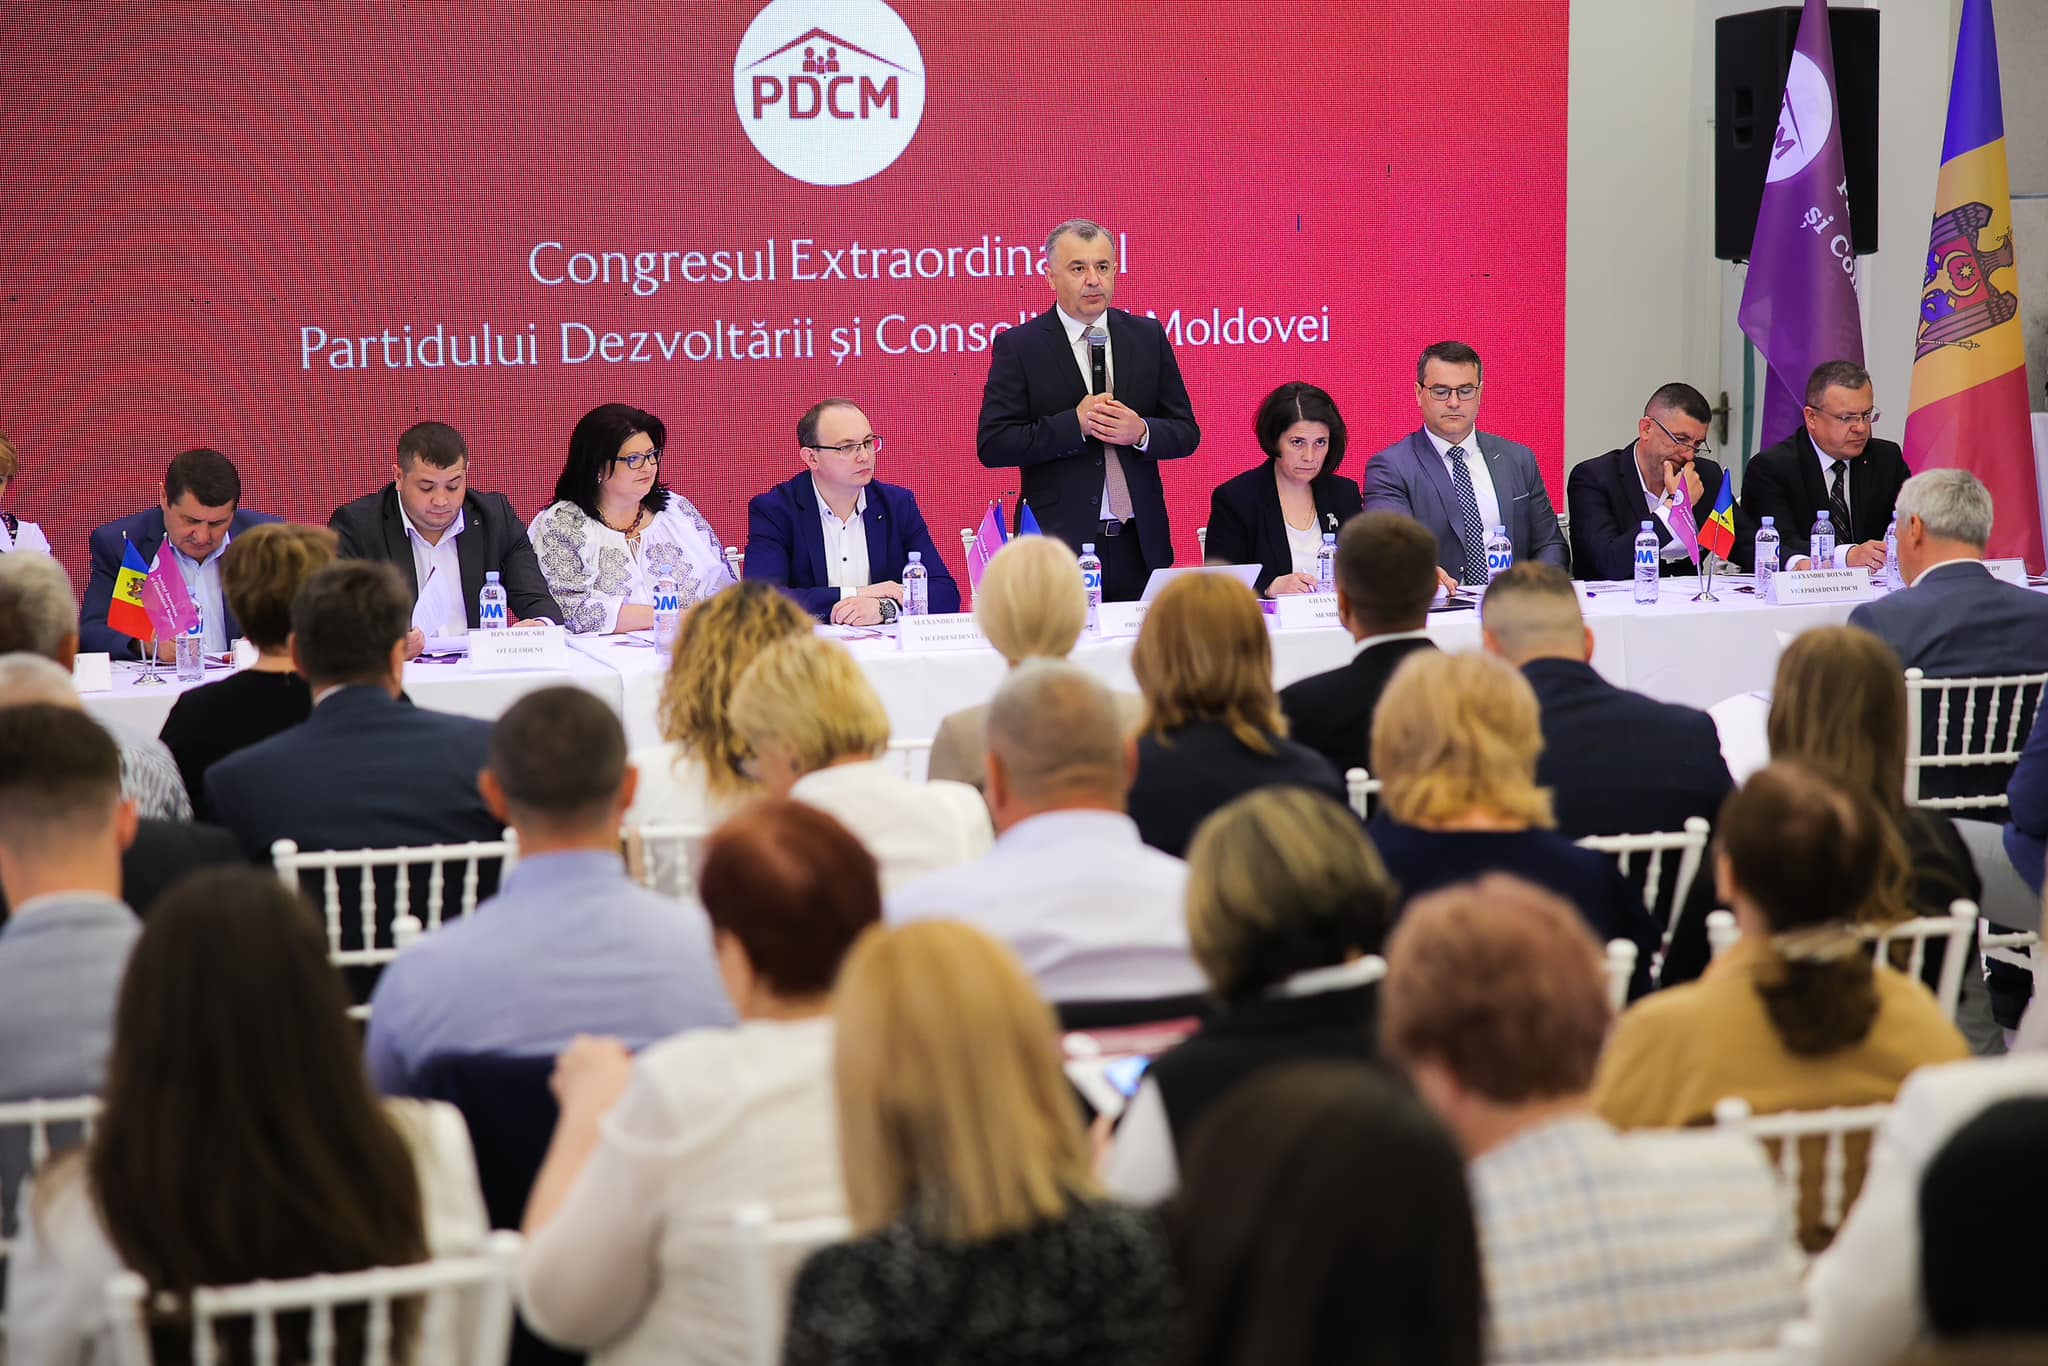 FOTO Irina Vlah a participat la congresul PDCM, condus de Ion Chicu. Fostul premier: „Partidul a crescut considerabil”